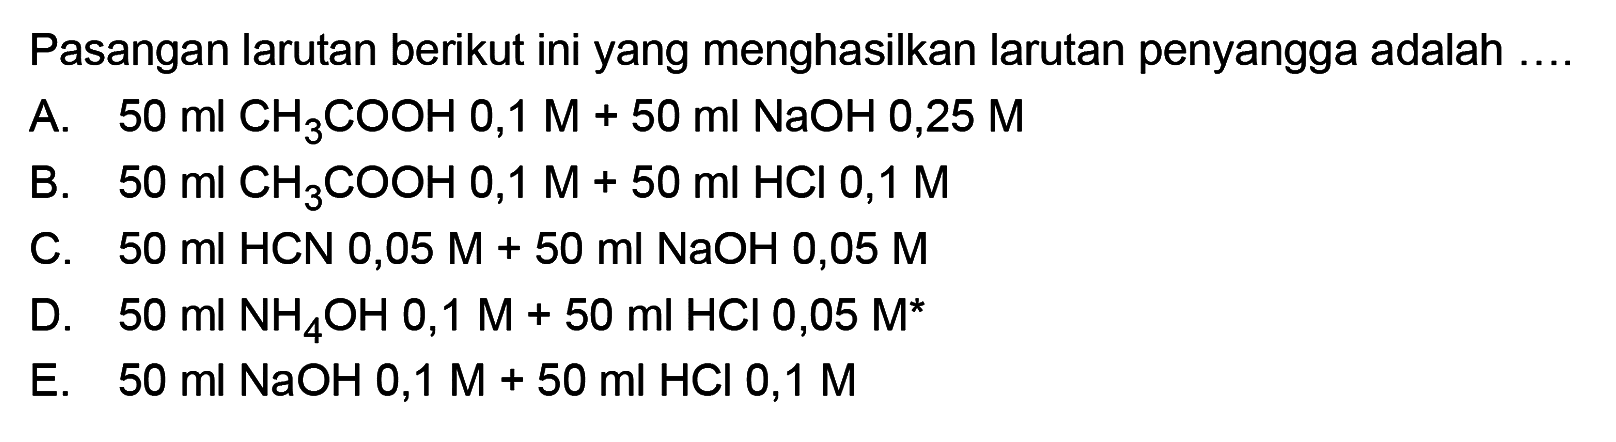 Pasangan larutan berikut ini yang menghasilkan larutan penyangga adalah .... A. 50 ml CH3COOH 0,1 M+50 ml NaOH 0,25 M B. 50 ml CH3COOH 0,1 M+50 ml HCl 0,1 M C. 50 ml HCN 0,05 M+50 ml NaOH 0,05 M D. 50 ml NH4OH 0,1 M+50 ml HCl 0,05 M E. 50 ml NaOH 0,1 M+50 ml HCl 0,1 M